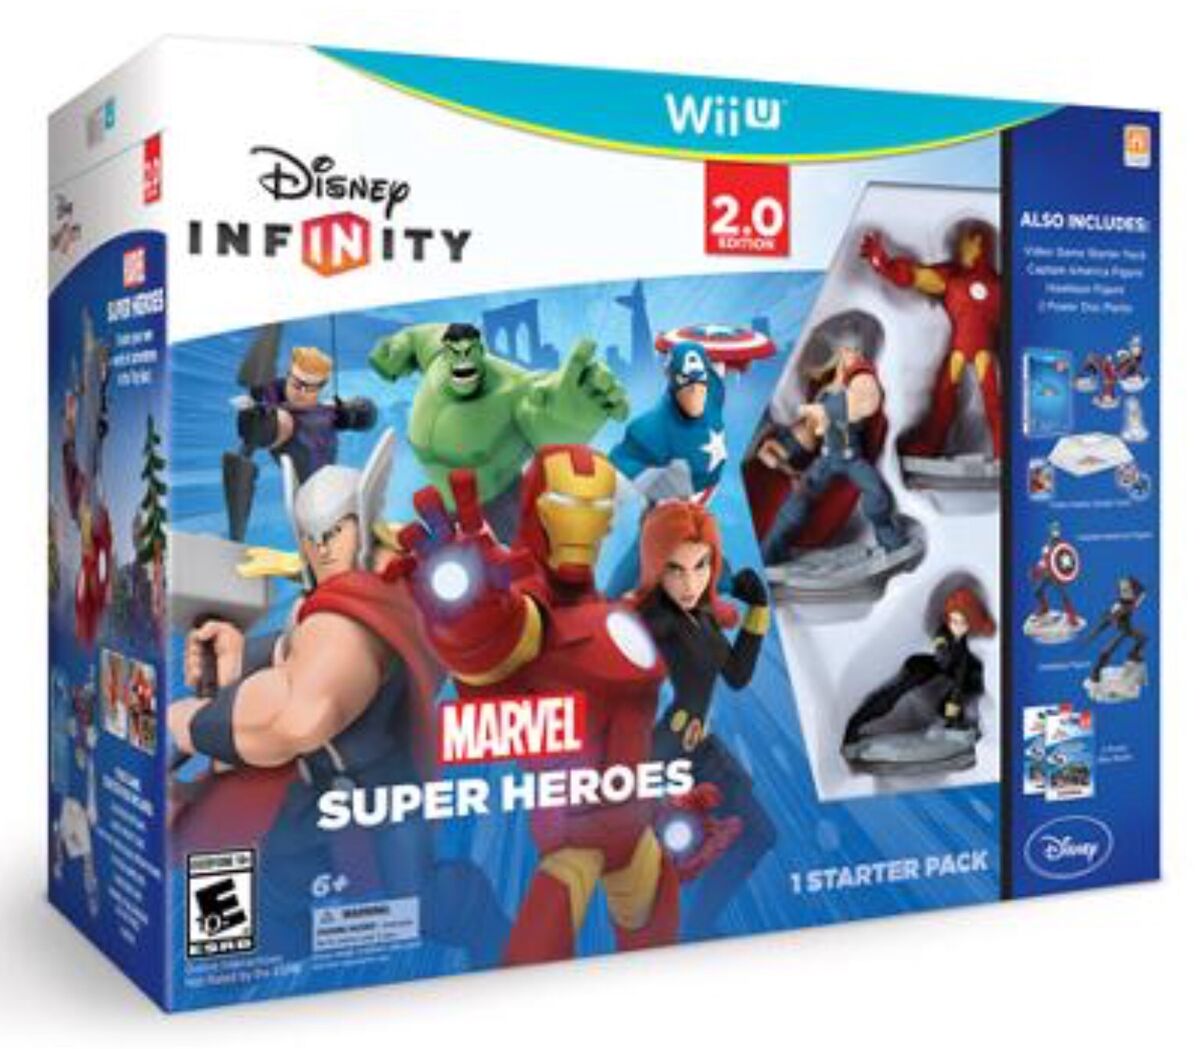 Disney Infinity: 2.0 Edition: Wii U Bundle | Disney Infinity Wiki